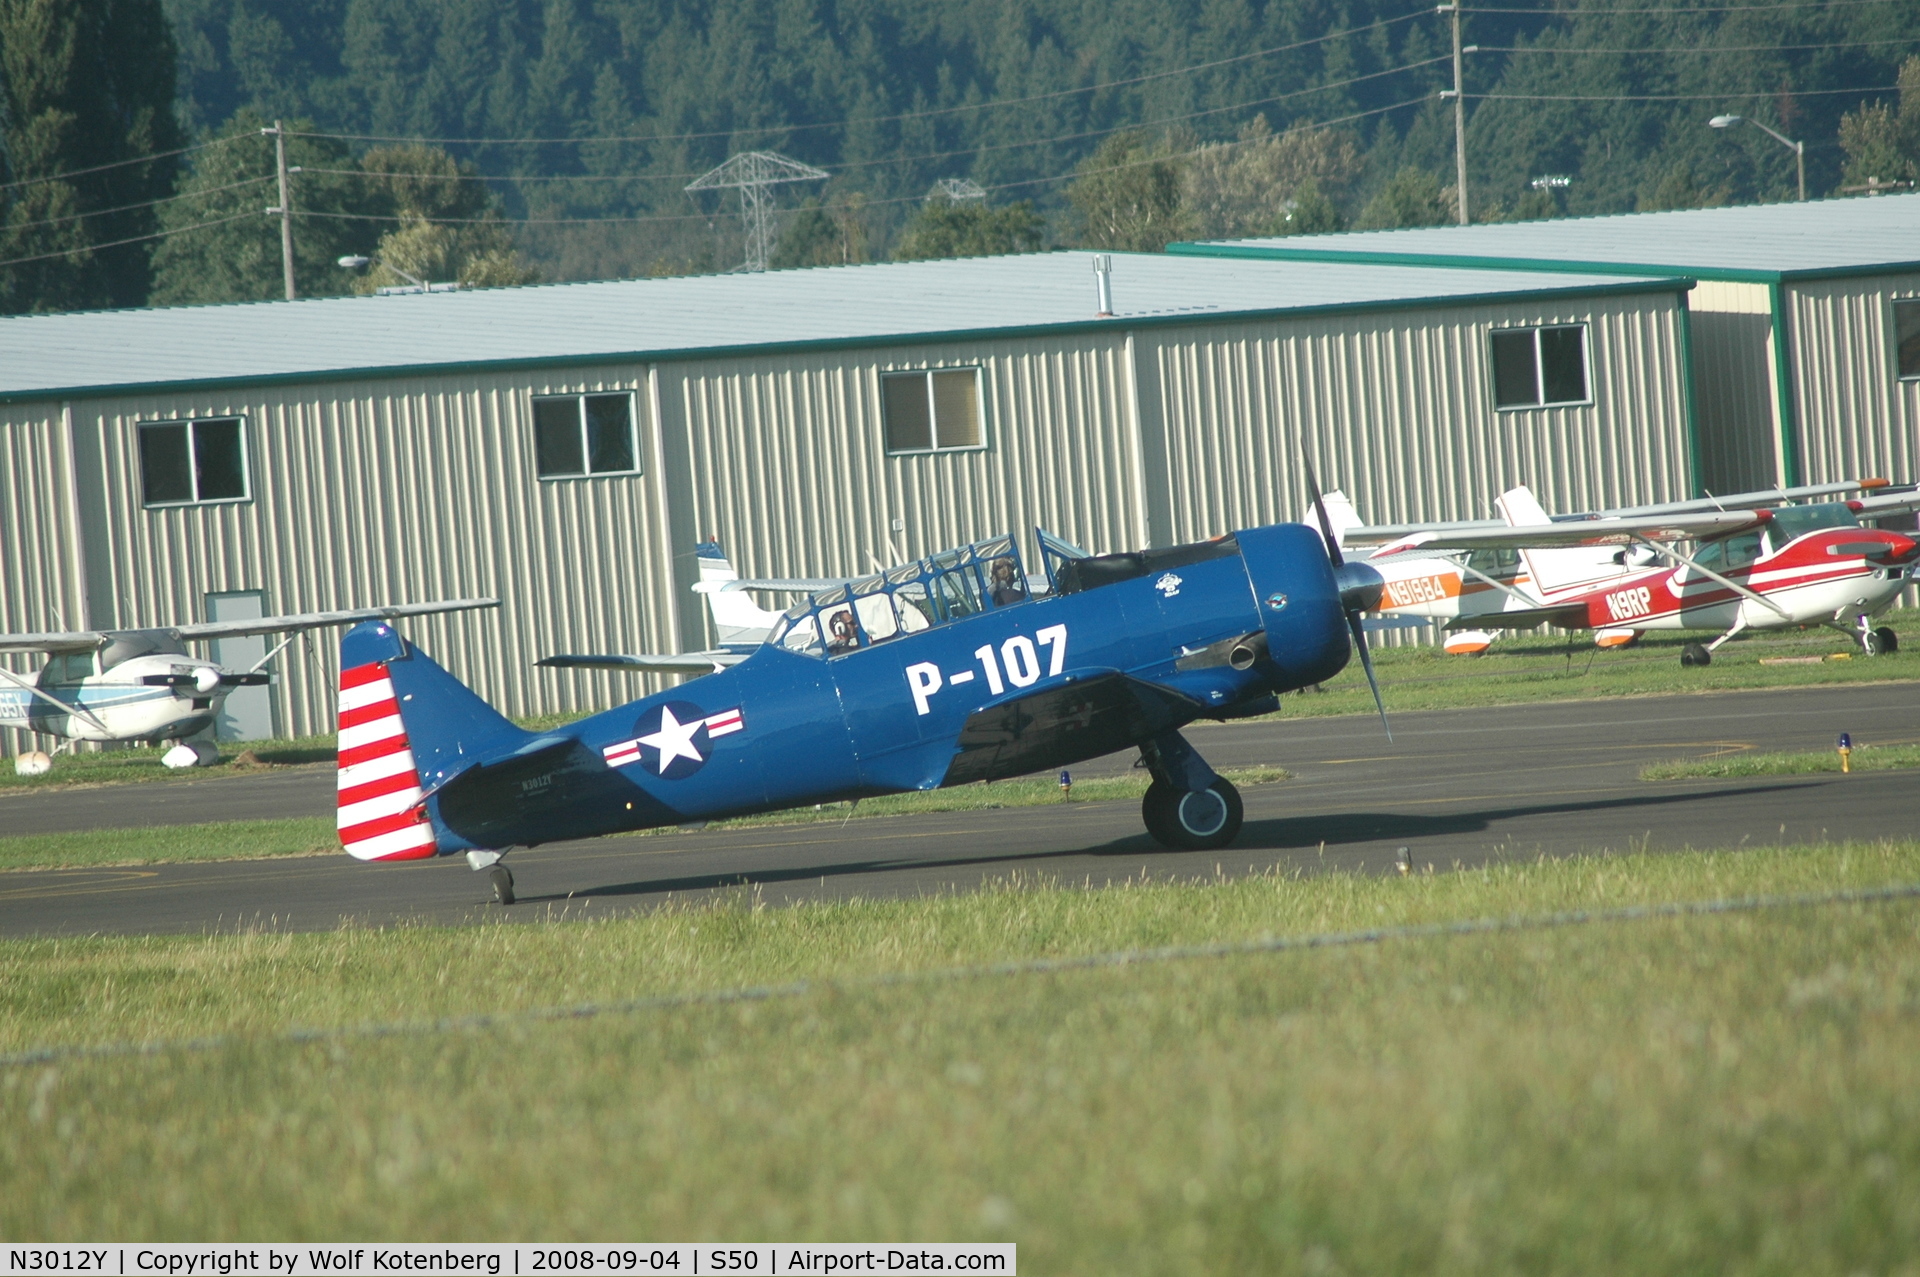 N3012Y, 1943 North American AT-6 C/N 412223, approaching the runway